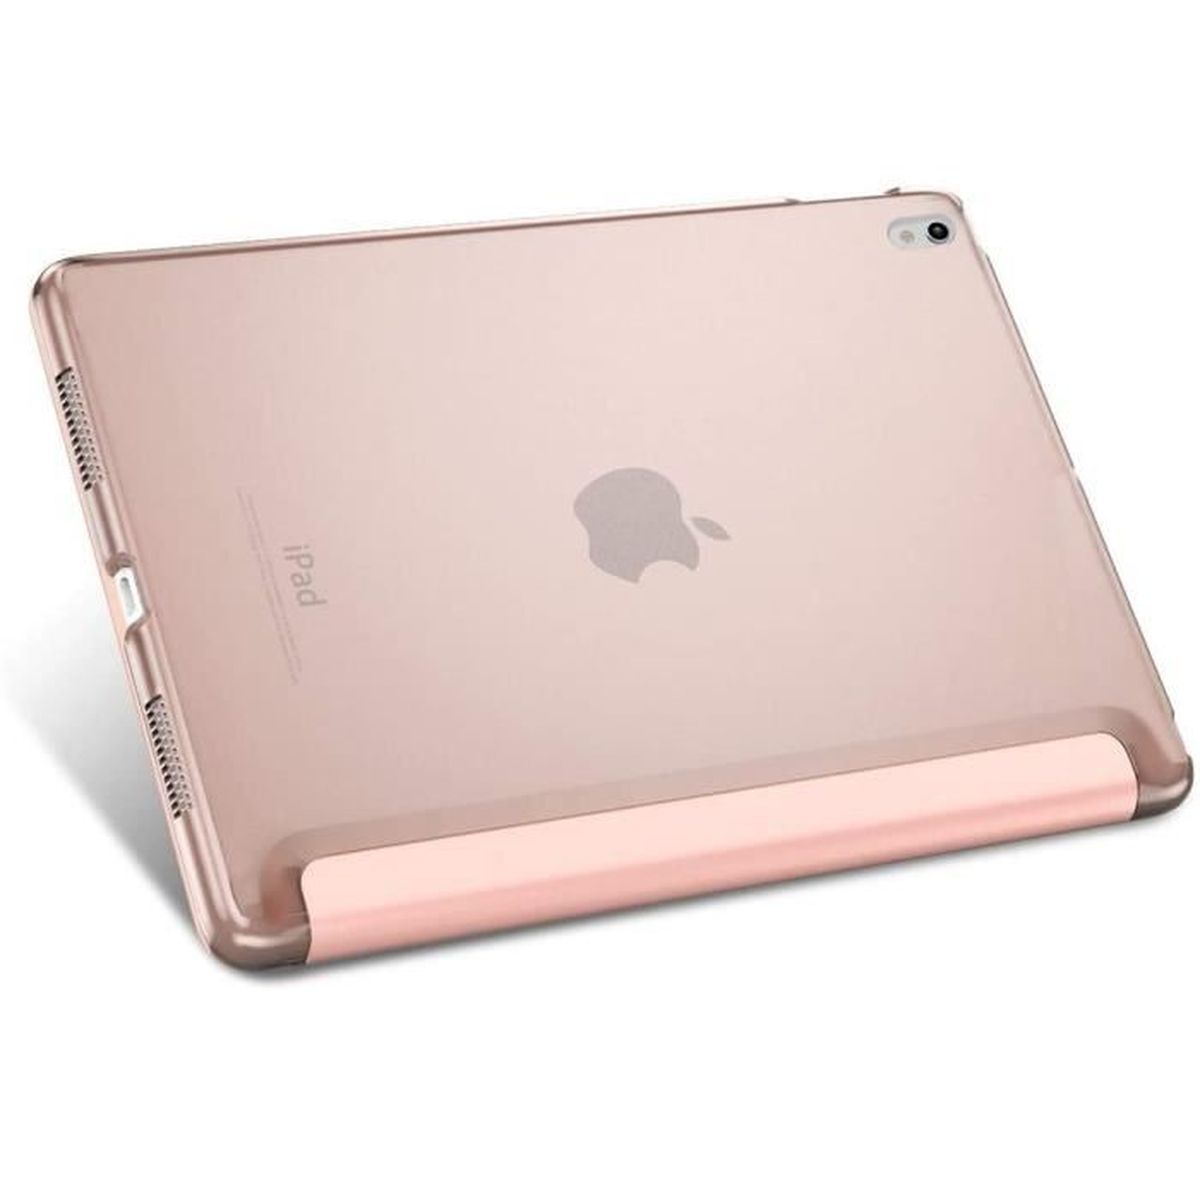 Étui pour iPad marbré pour fille, feuille pour iPad 9,7 6e génération 2018,  or rose pour iPad Pro 11 10,5 12,9 mini 5 Air 3, feuille marbrée rose  tropicale florale pour fille -  France